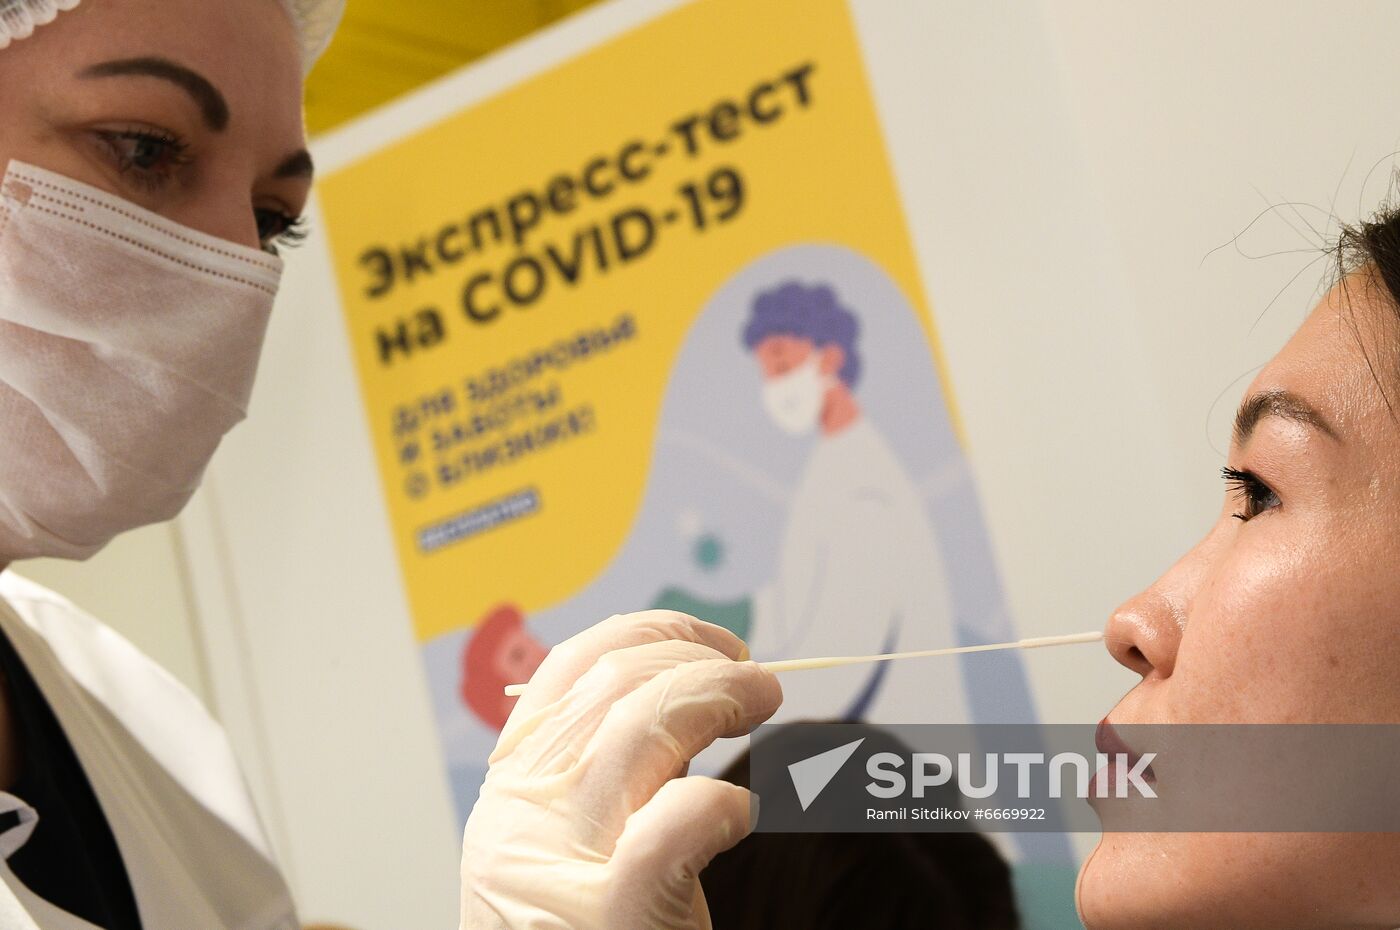 Russia Coronavirus Testing